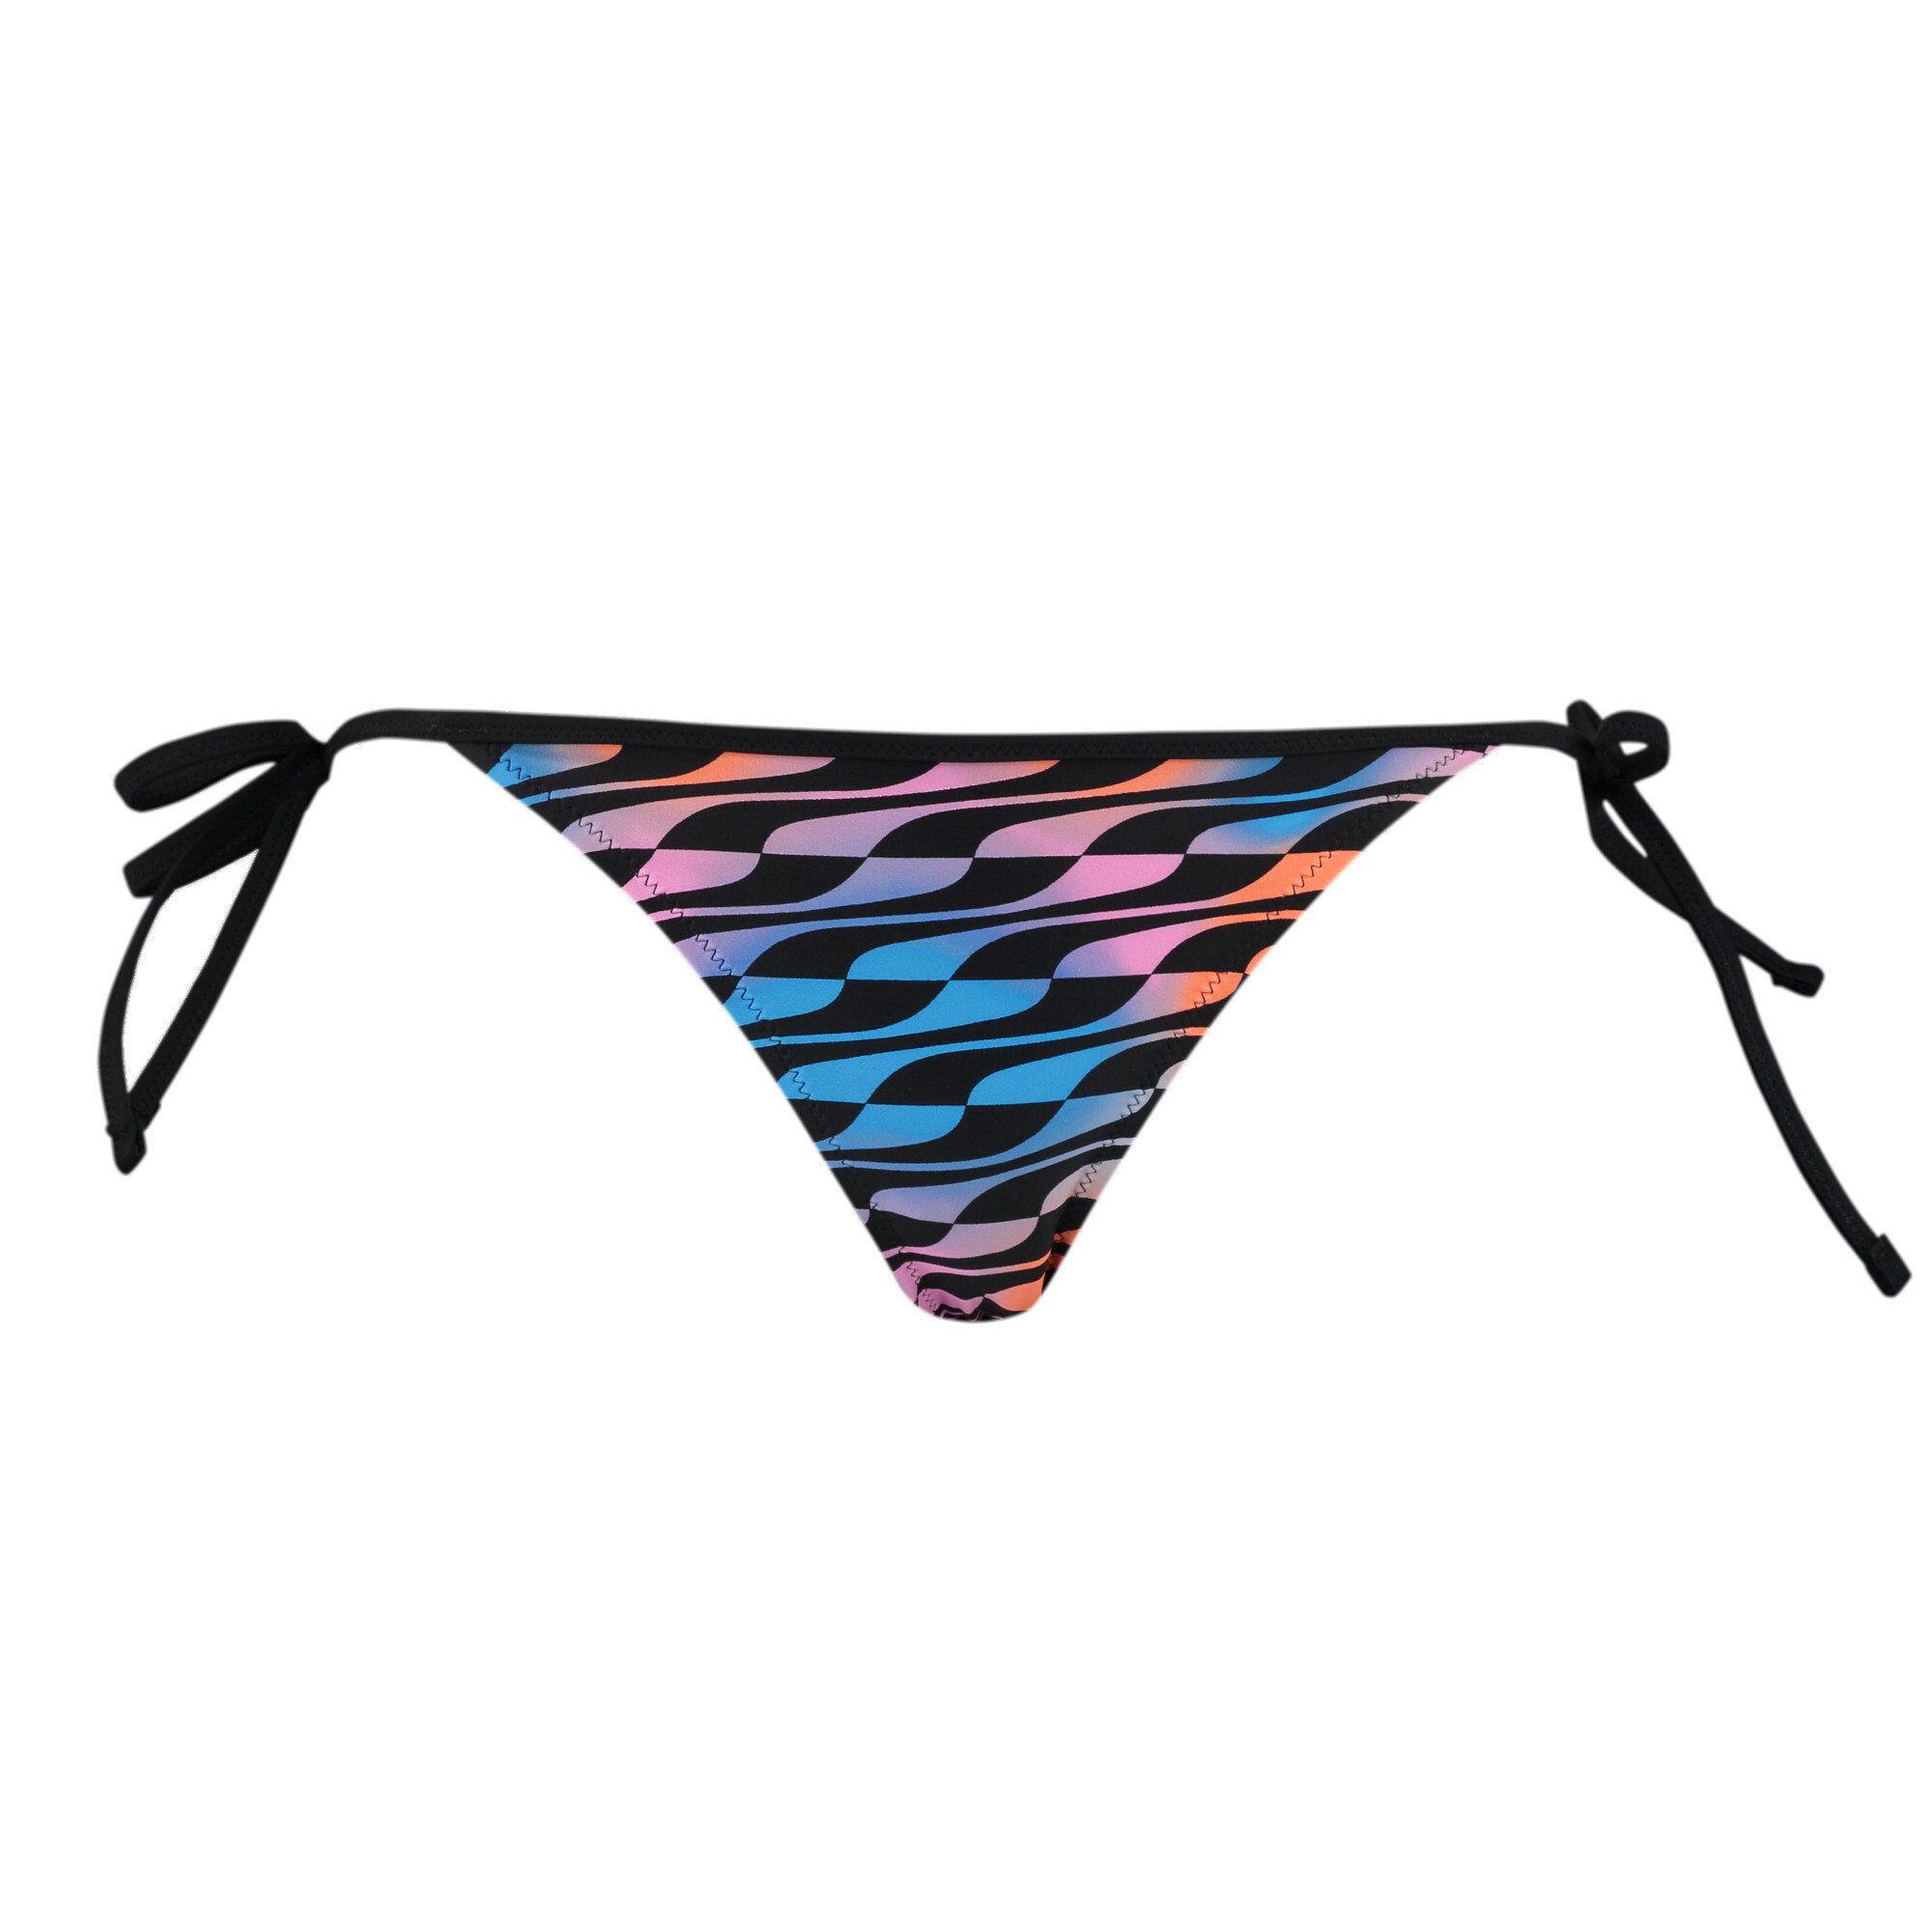 Women's PUMA Swim Formstrip Side Tie Bikini Brief In Black Combo, Size Small